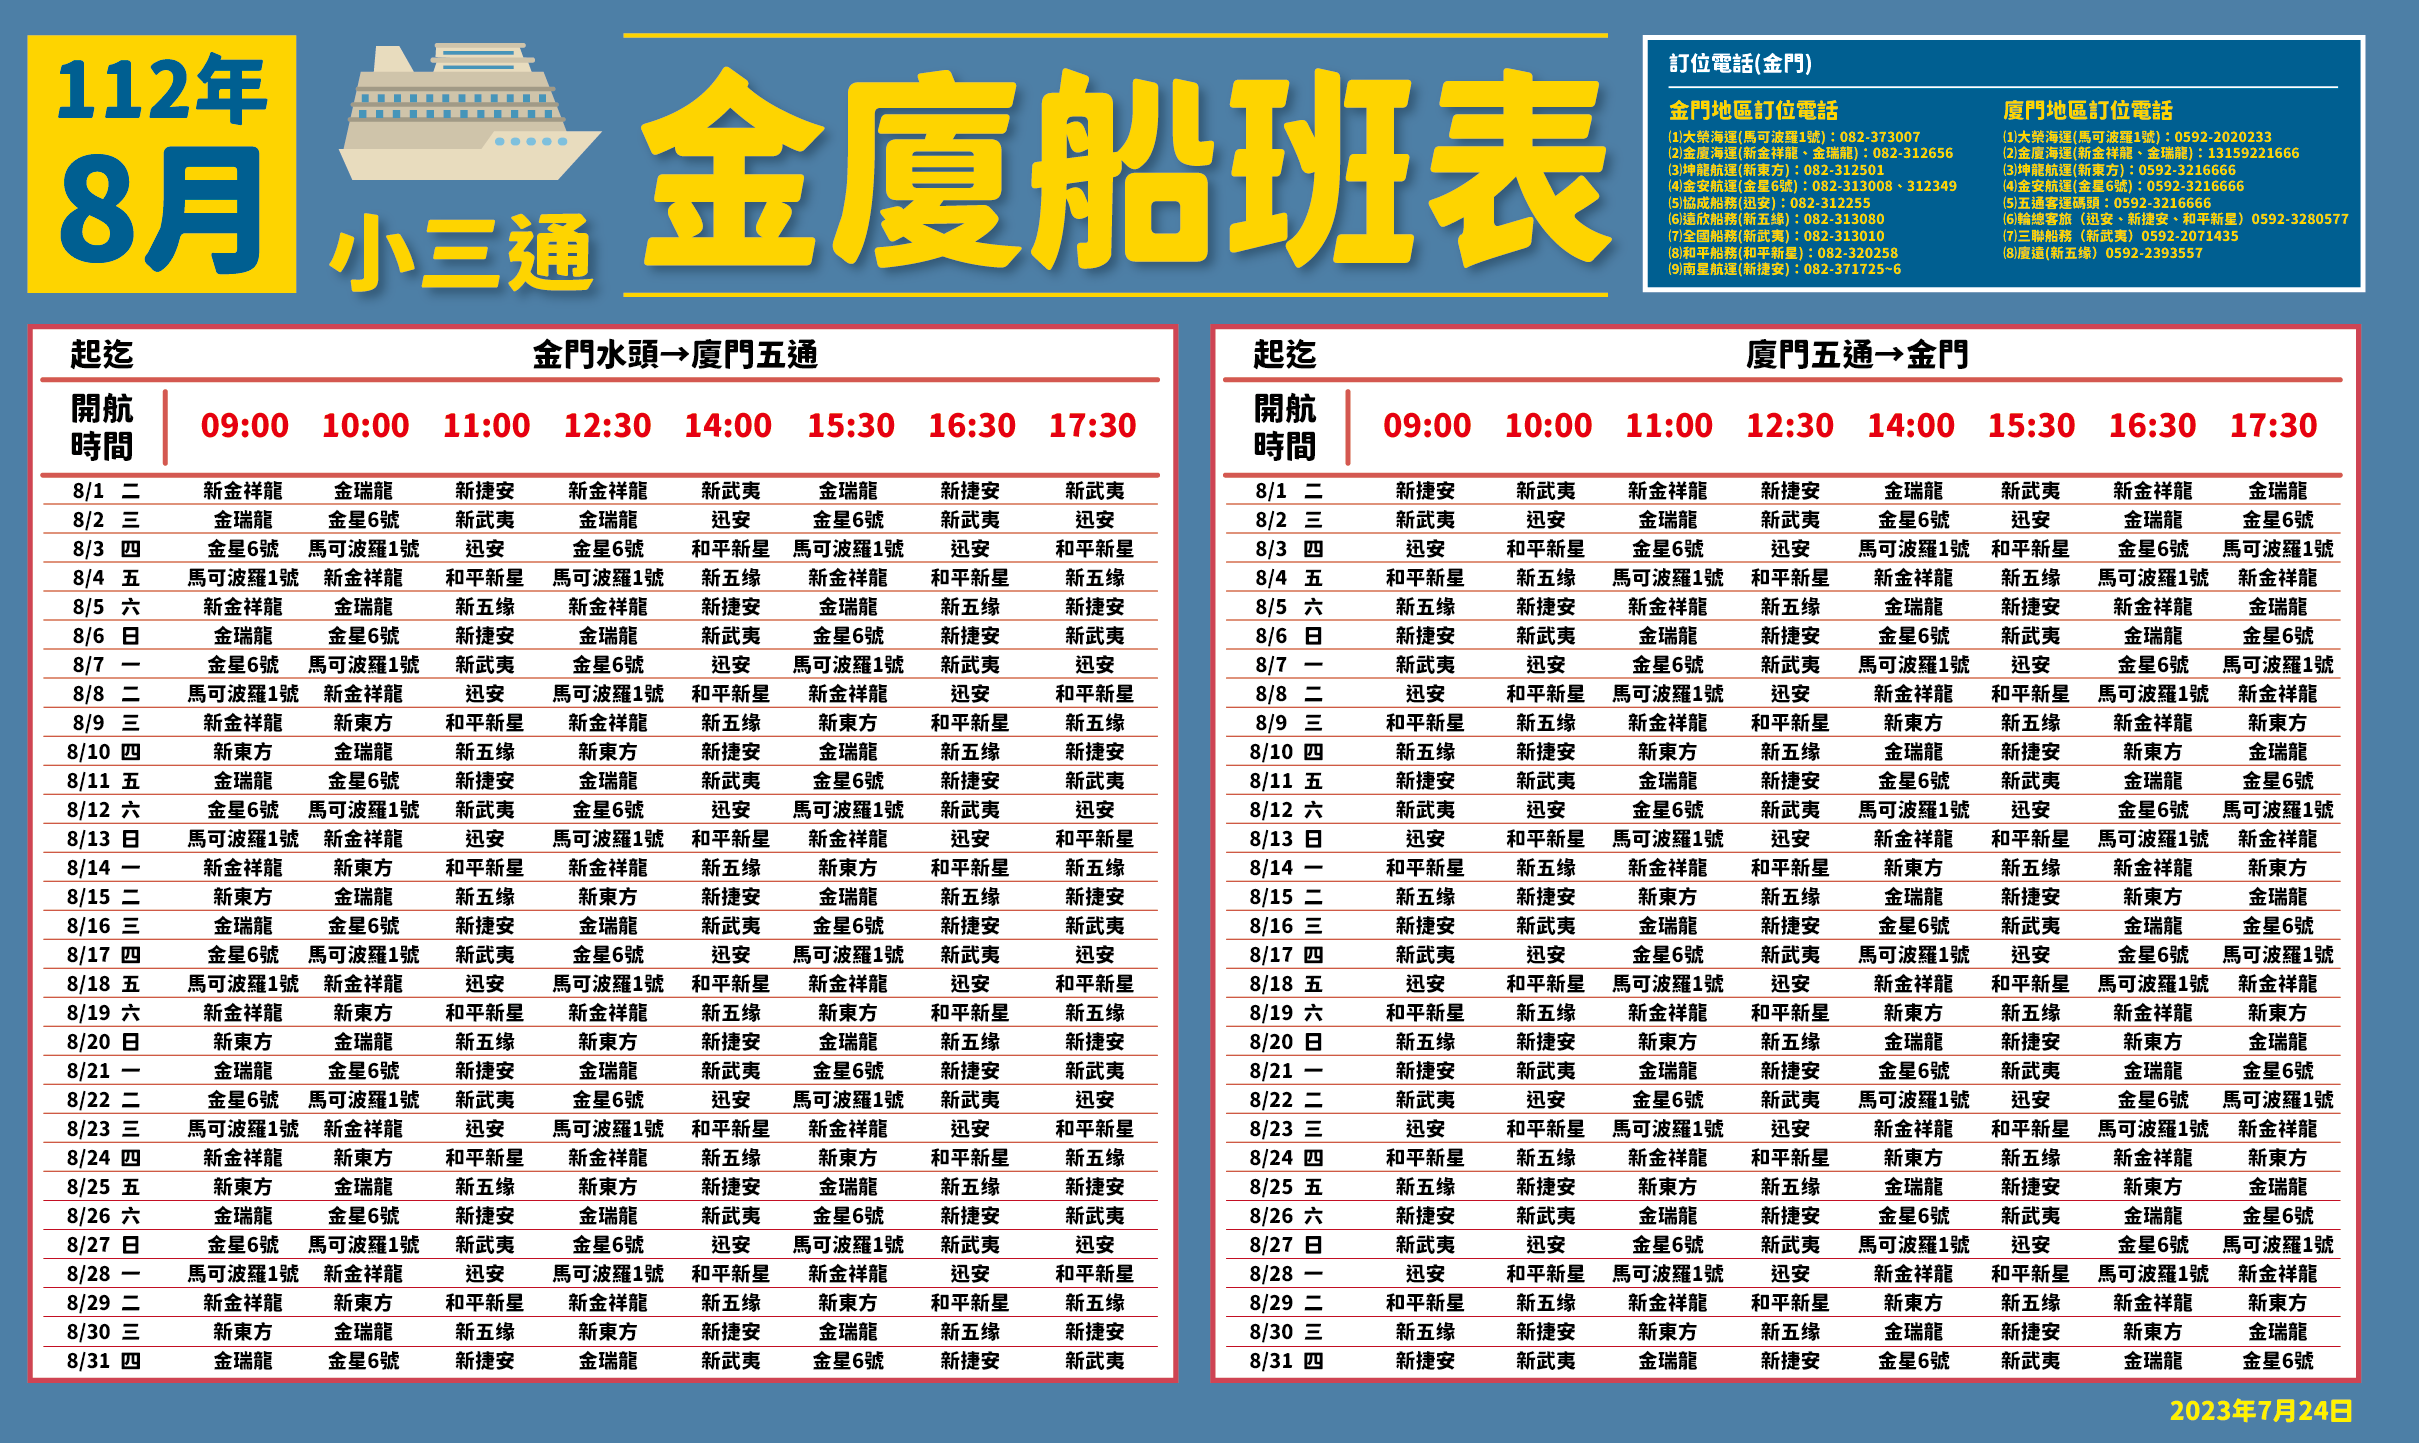 金廈小三通航班自8月起往返增加為16班次